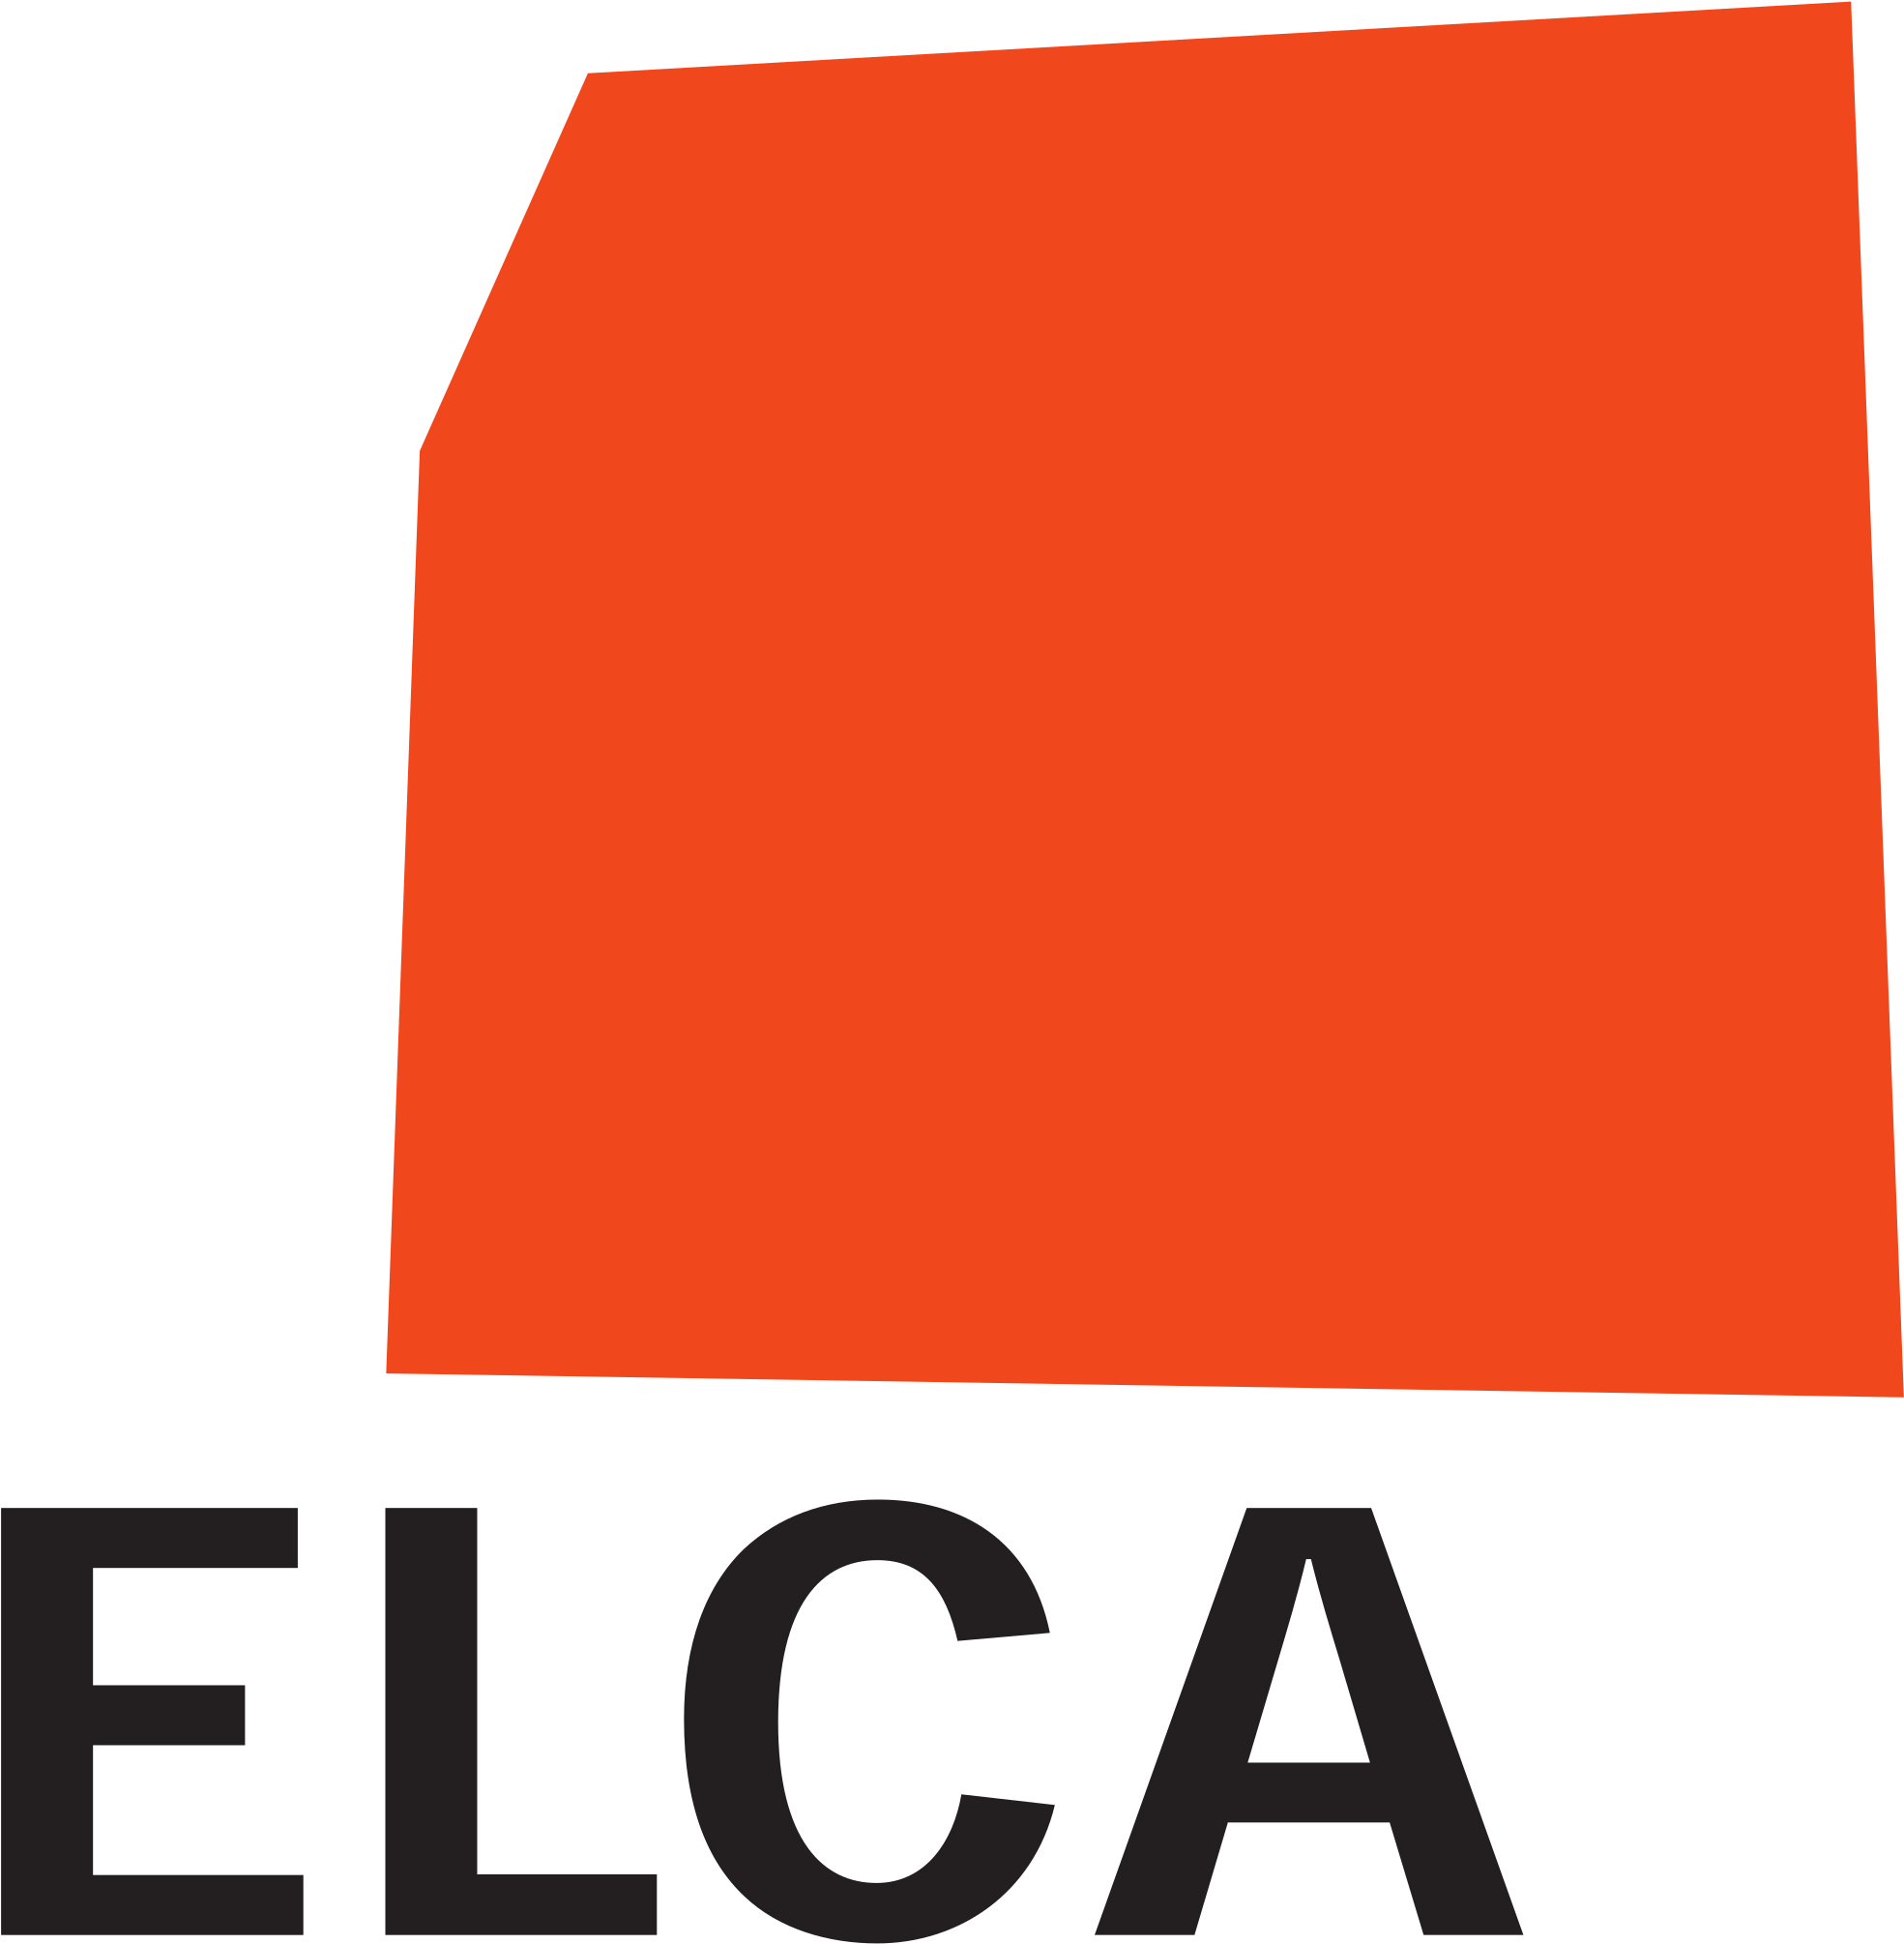 Open - Elca Informatik (2000x2033)